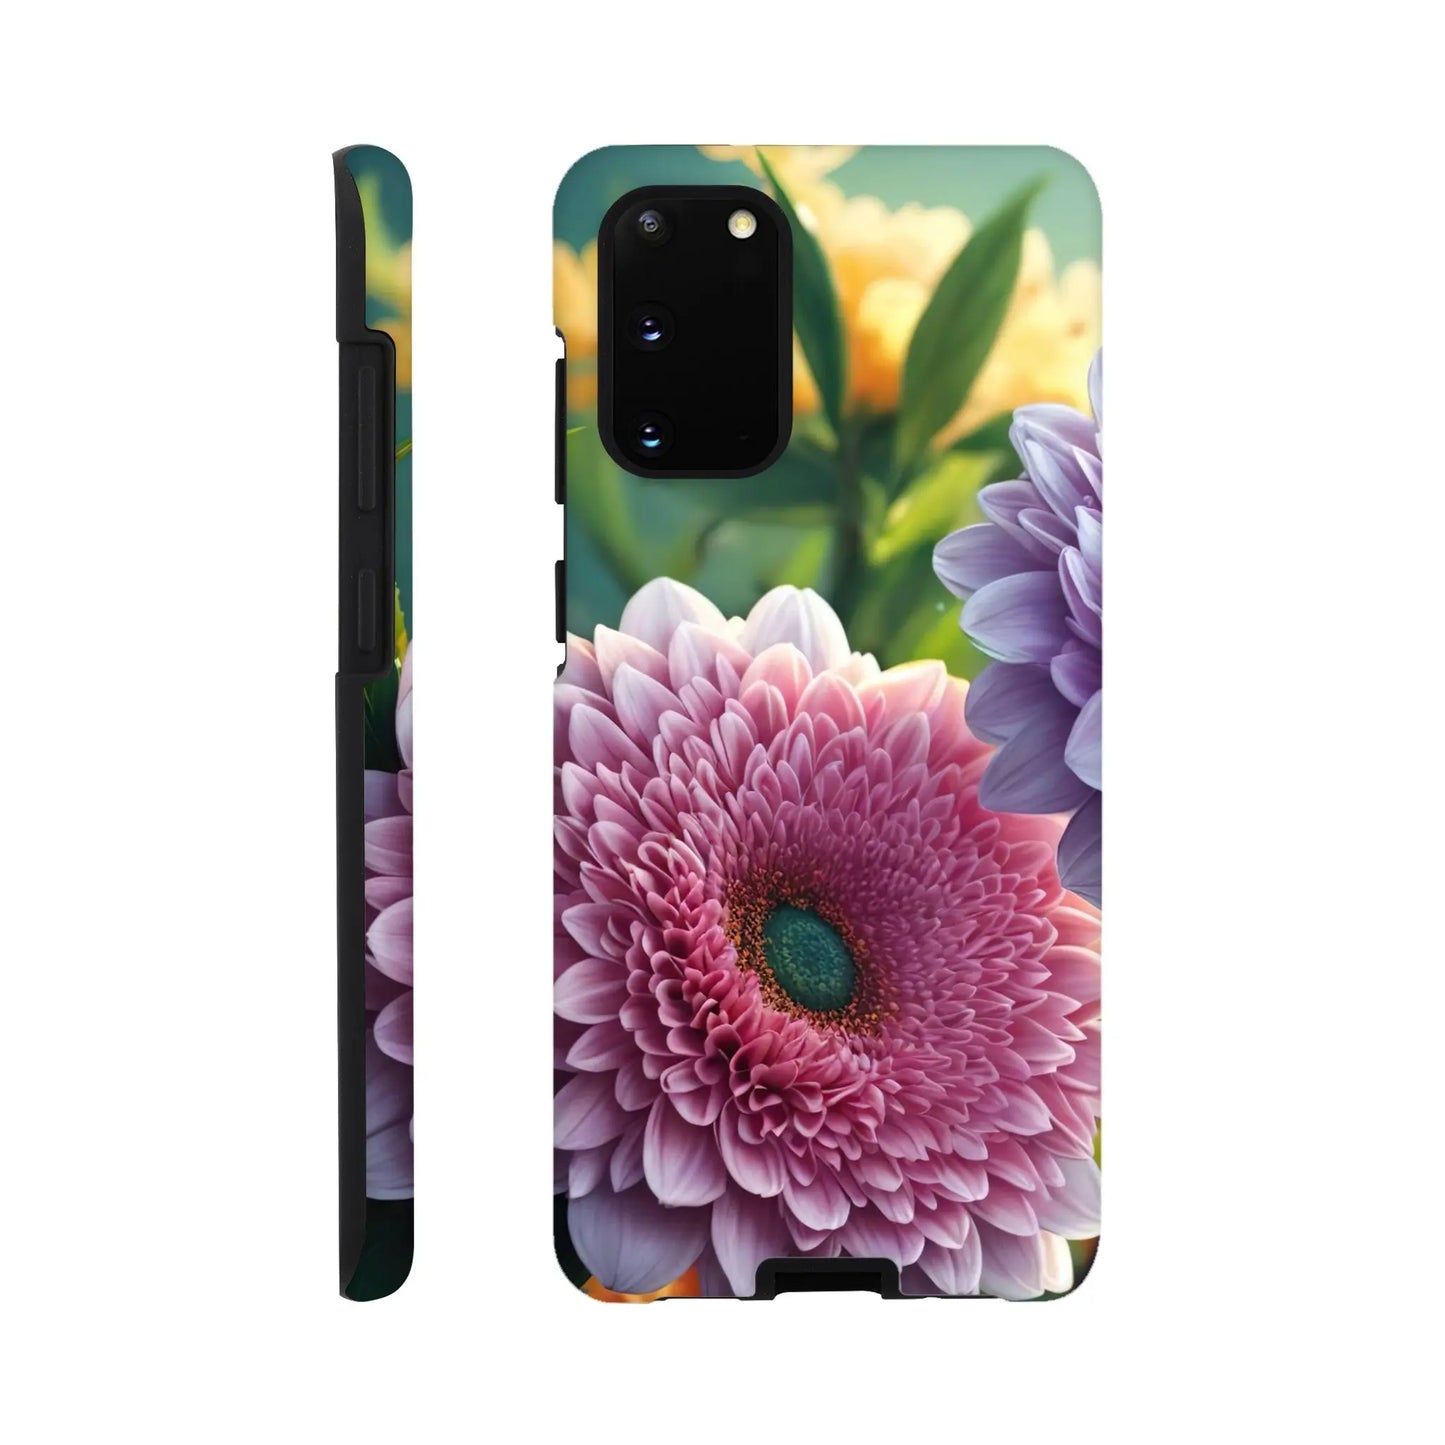 Smartphone-Hülle "Hart" - Blumen Vielfalt - Foto Stil, KI-Kunst, Pflanzen, Galaxy-S20 - RolConArt